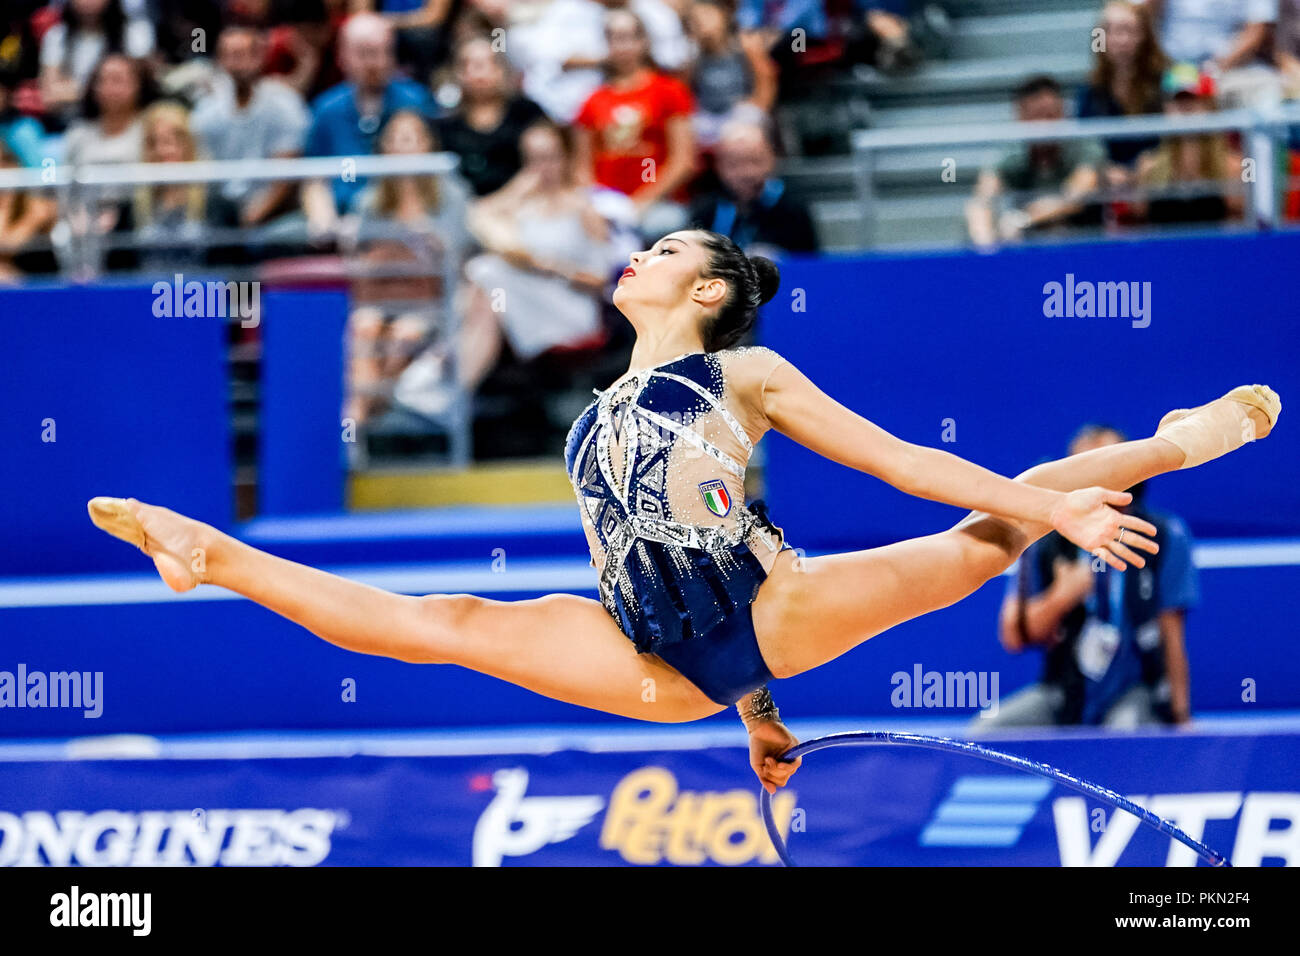 14 settembre 2018: Alexandra Agiurgiuculese di Â Italia durante le singole finale completa all'Arena Armeec a Sofia presso la trentaseiesima FIG Rhythmic Gymnastics World Championships. Ulrik Pedersen/CSM Foto Stock